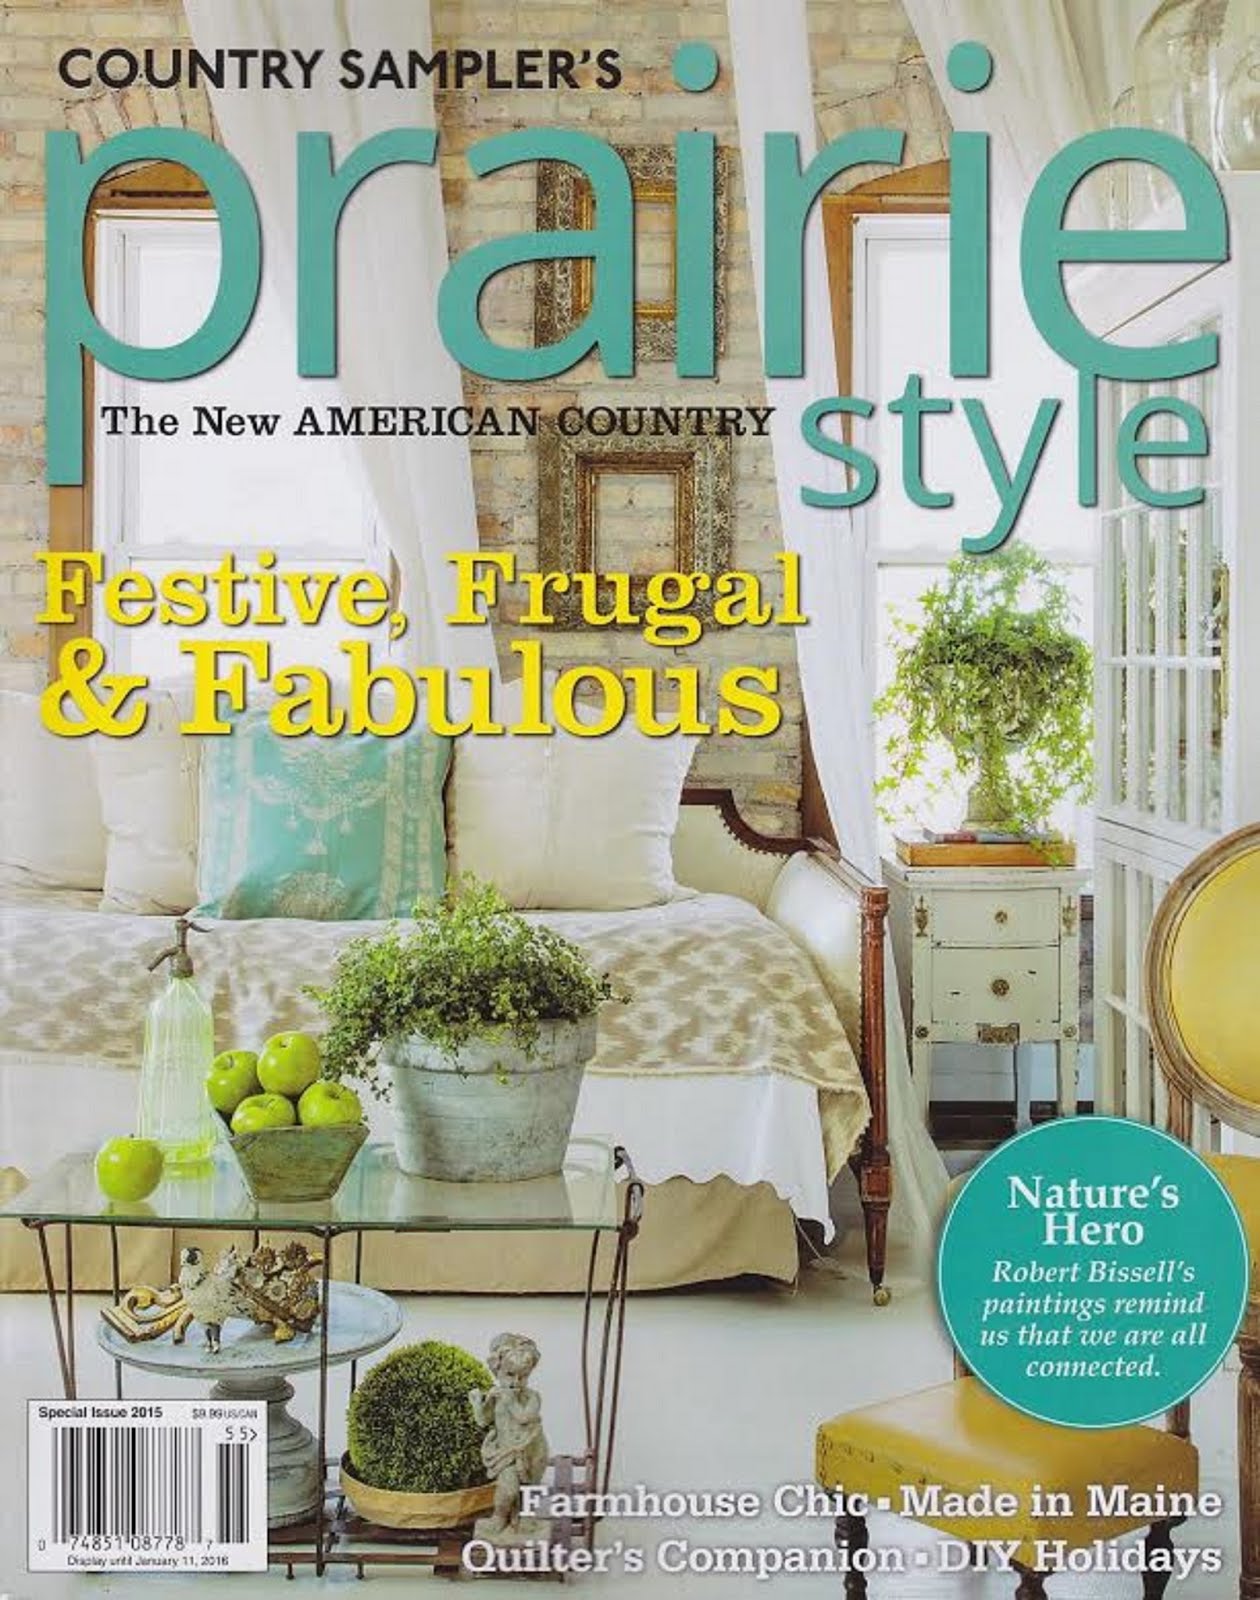 Thank you Fifi O'Neill! Prairie Style & The PORCH & Atelier